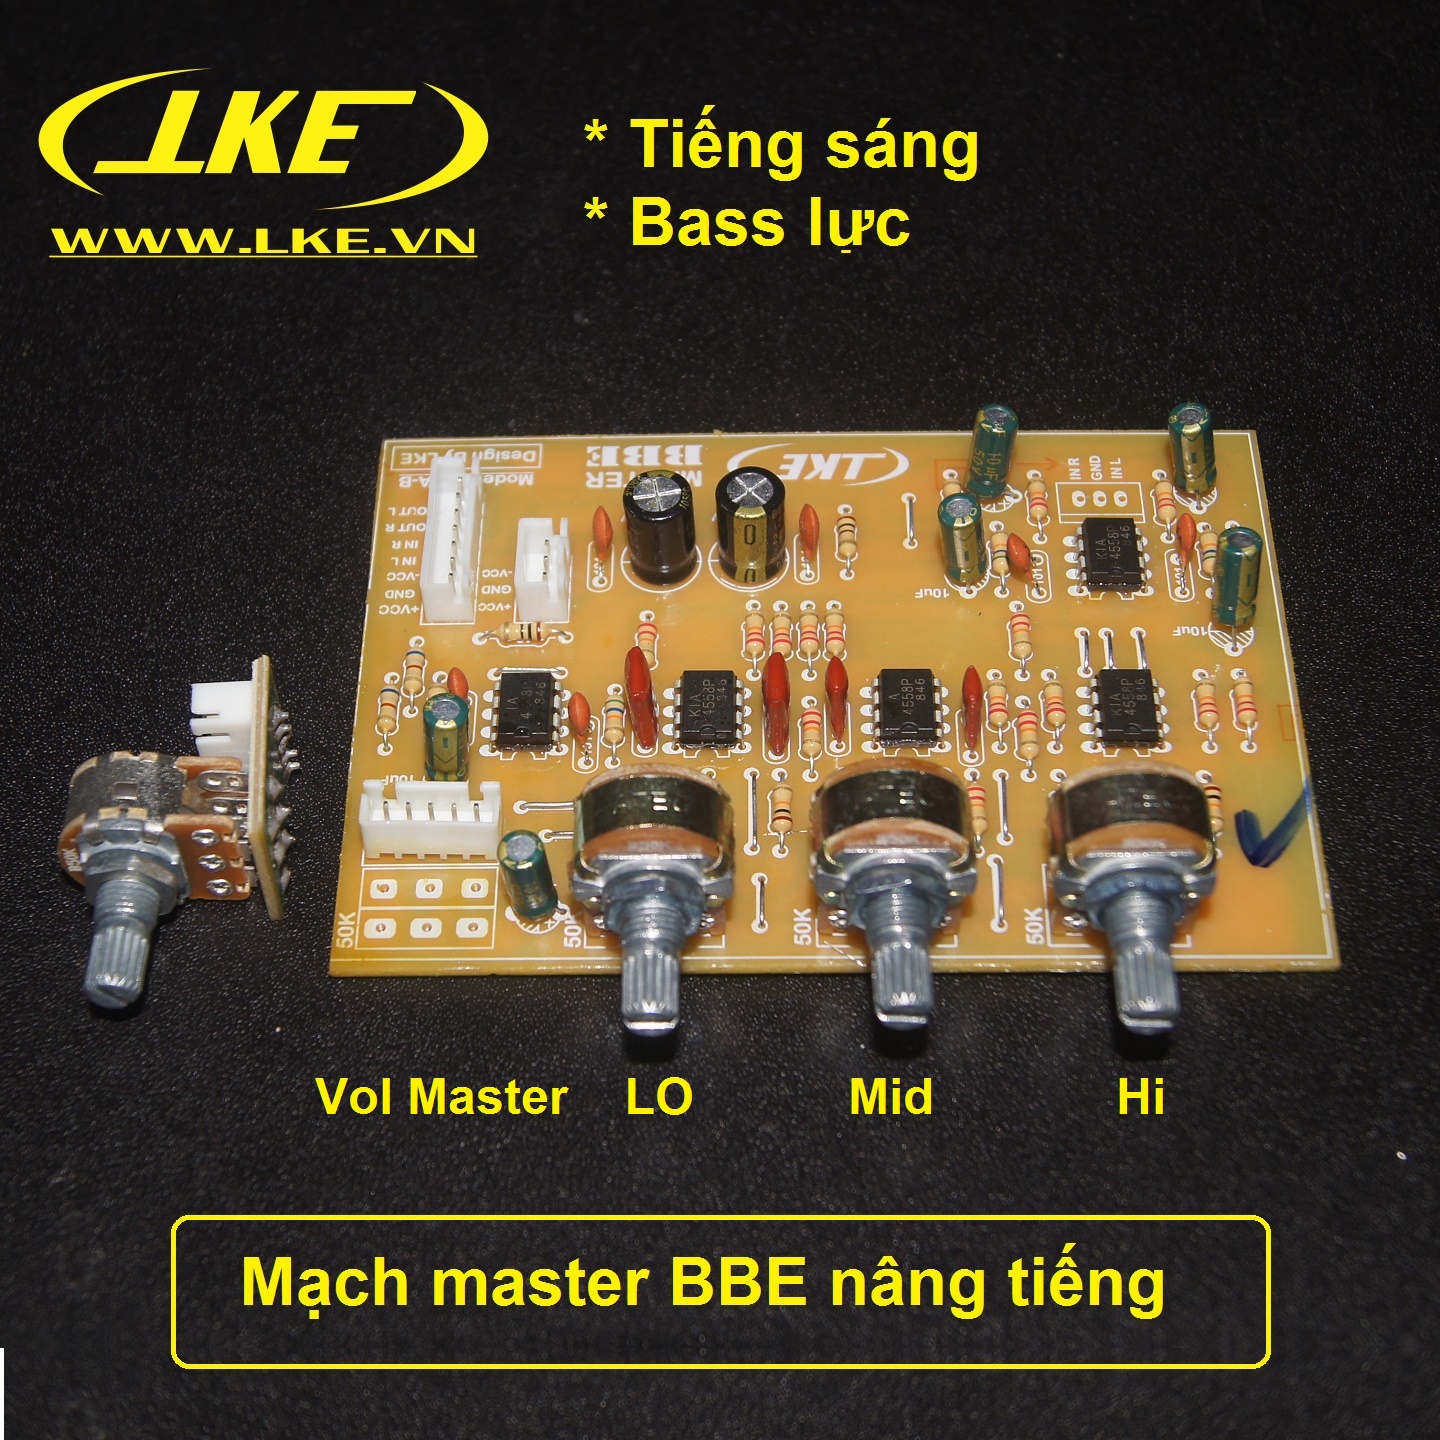 mạch master nâng tiếng BBE LKE